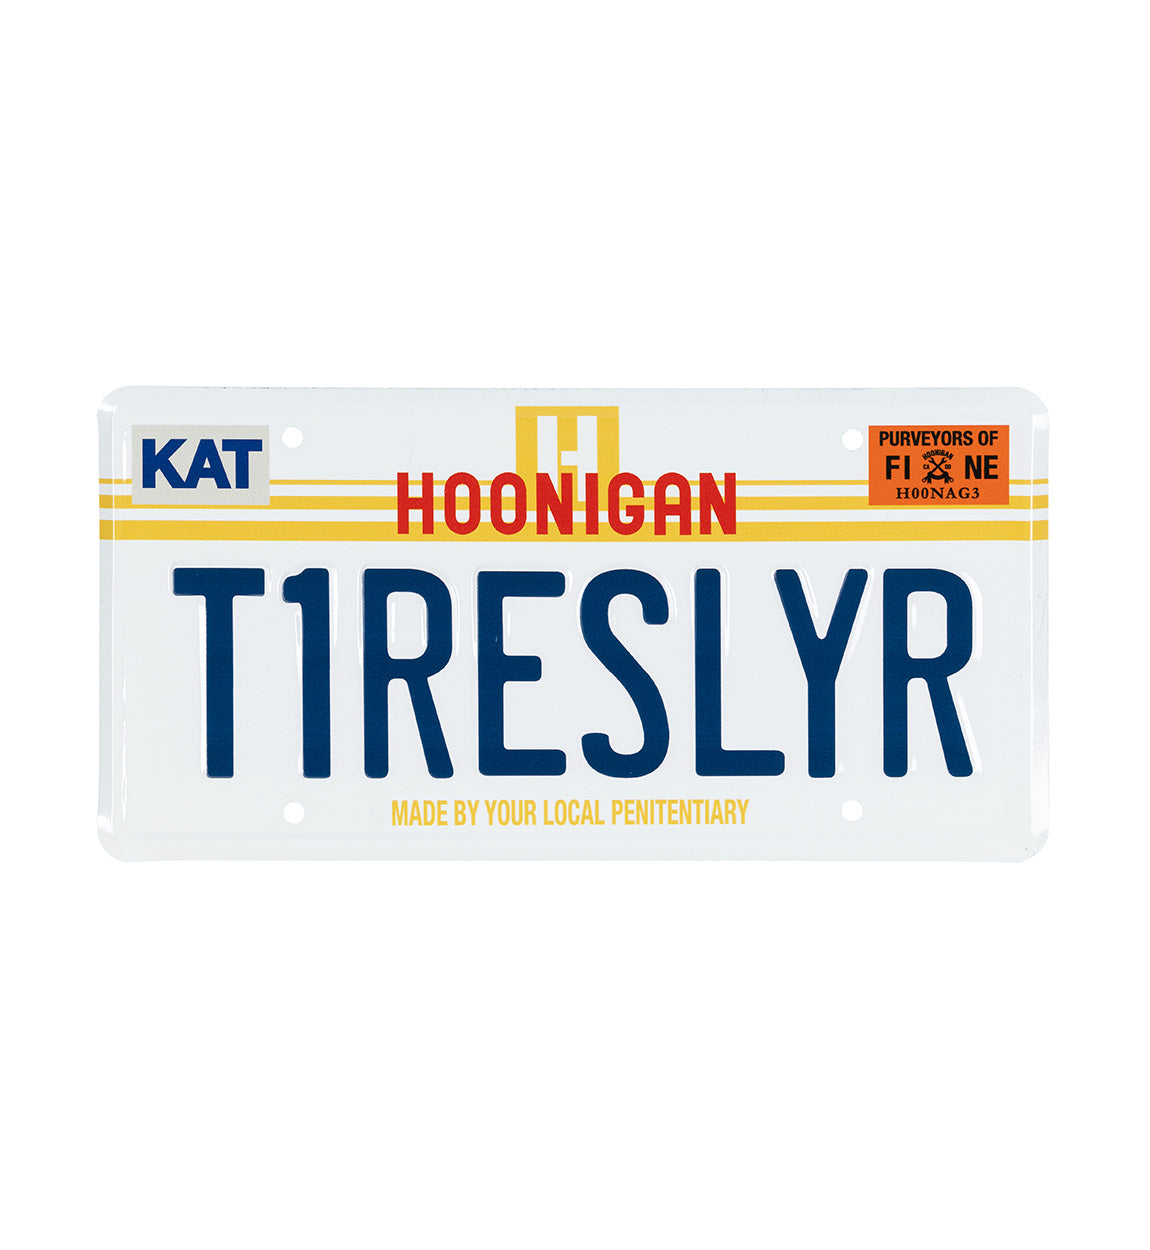 Hoonigan T1RESLYR Metal License Plate